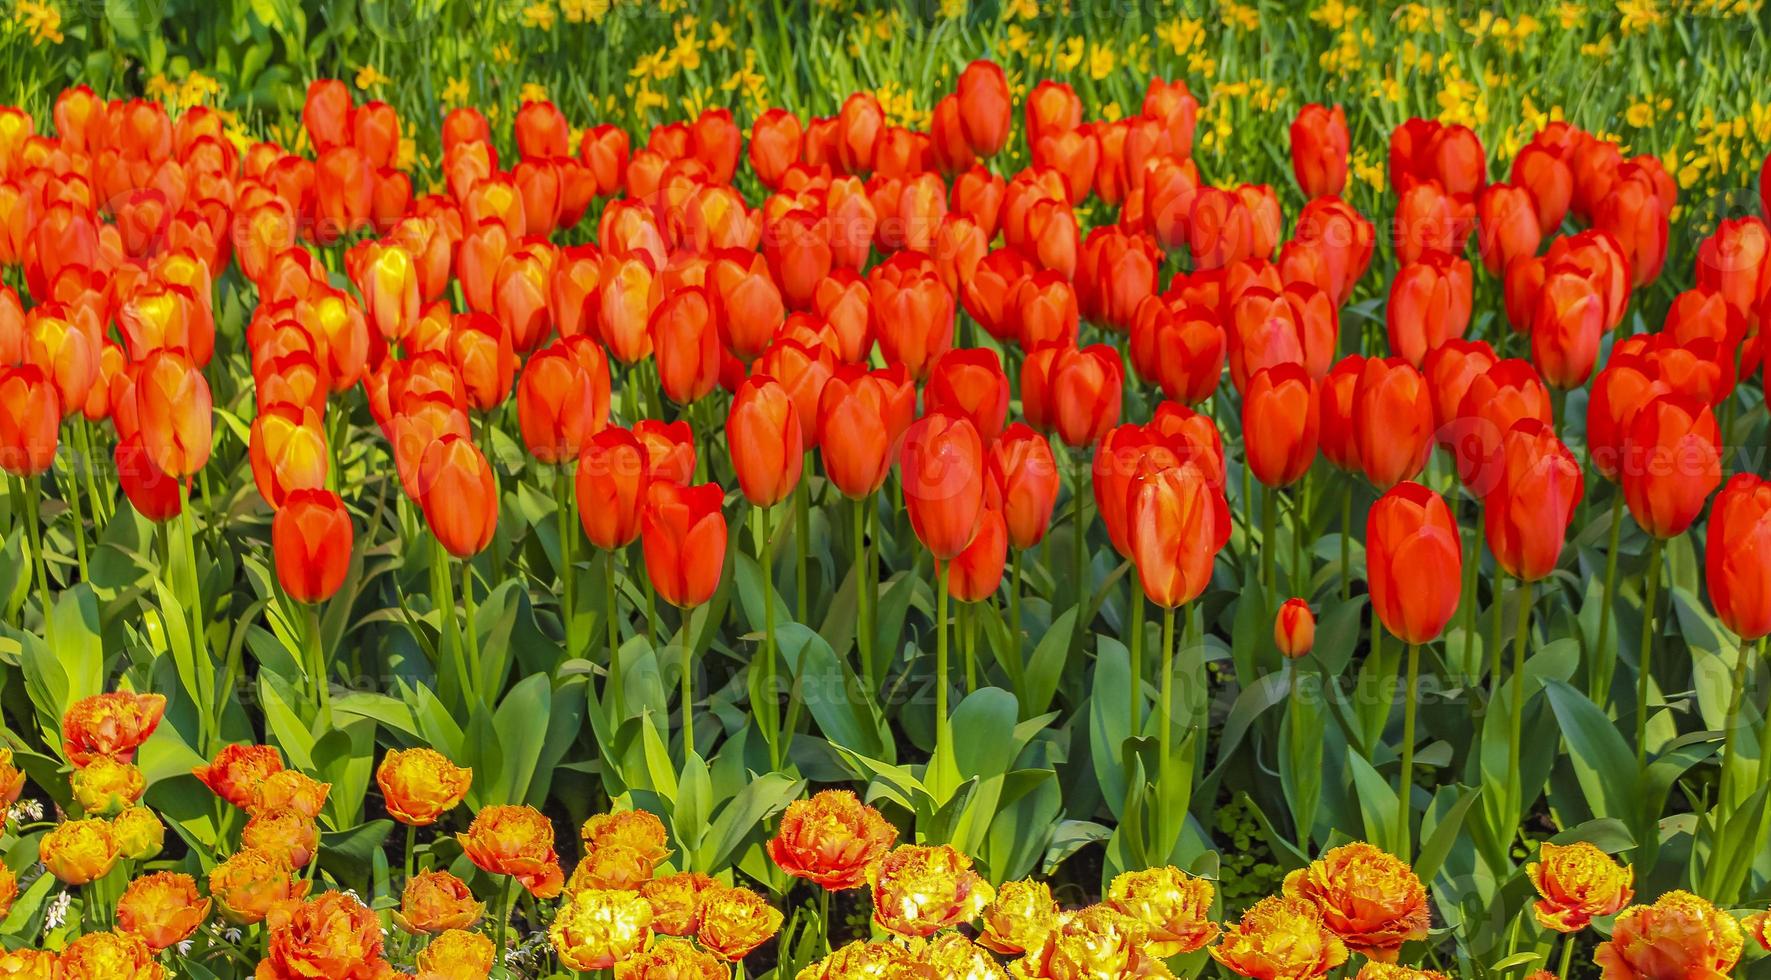 Many colorful tulips daffodils Keukenhof Lisse Holland Netherlands. photo